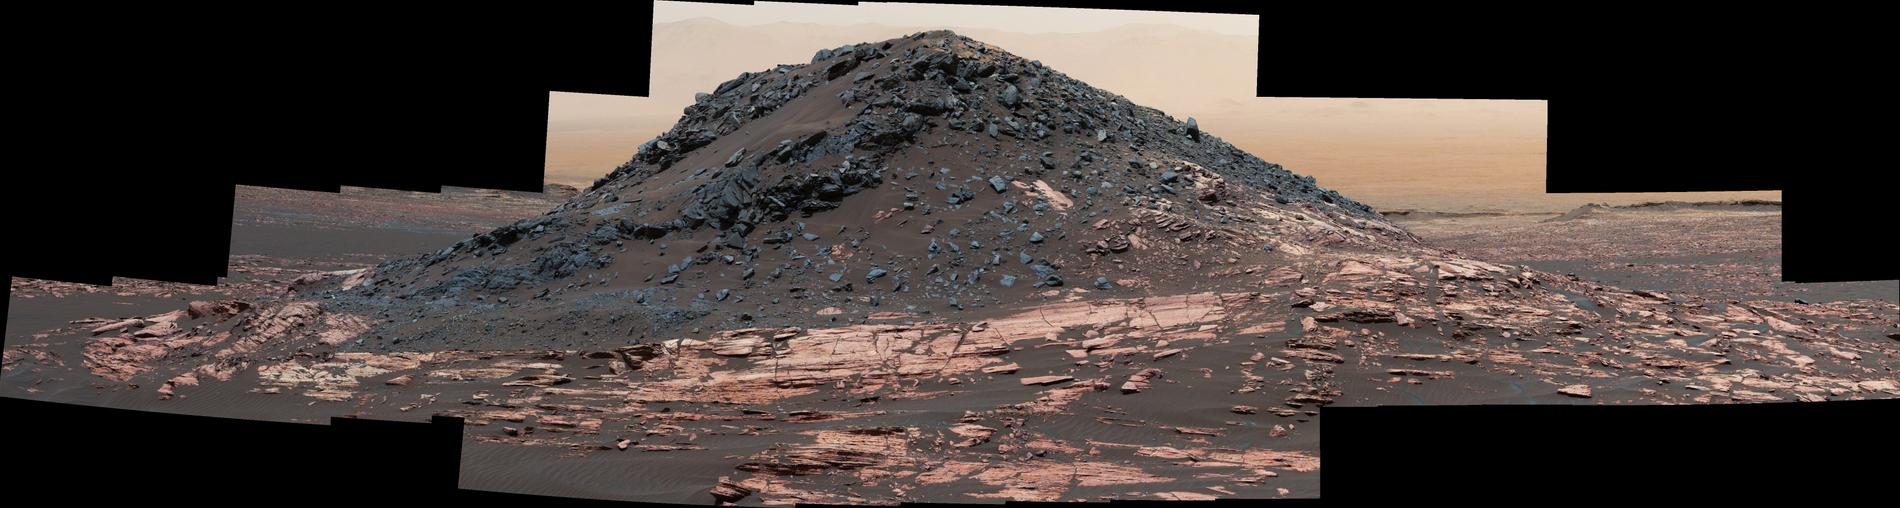 Flera sammanfogade bilder av  en liten cirka fem meter hög kulle som kallas "Ireson Hill" och ligger på vad nasa döpt till ”Lower Mount Sharp” på Mars. Roboten Curiosity utforskade området i februari 2017.